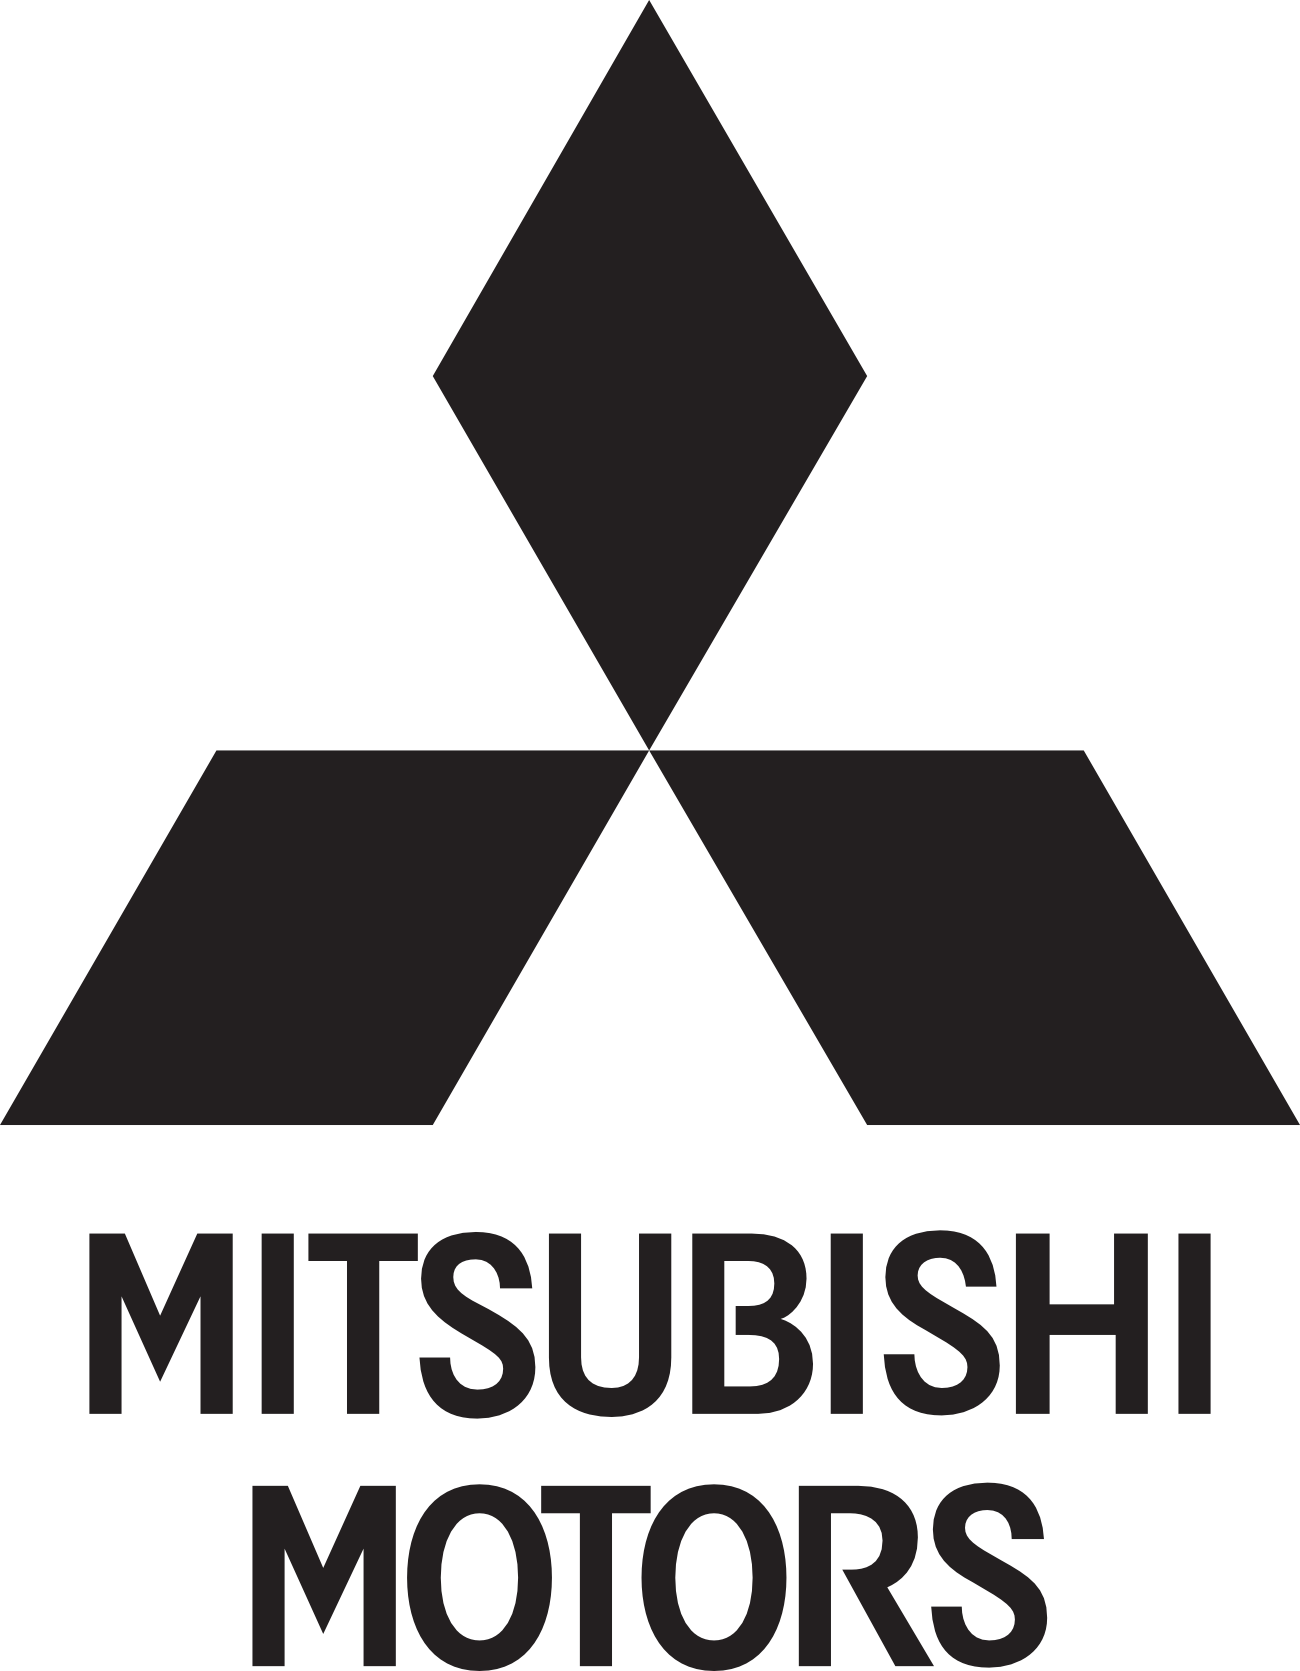 Производитель mitsubishi. Три Ромбика марка Митсубиси. Mitsubishi Electric логотип. Значок Митсубиси. Лого Митсубиси вектор.